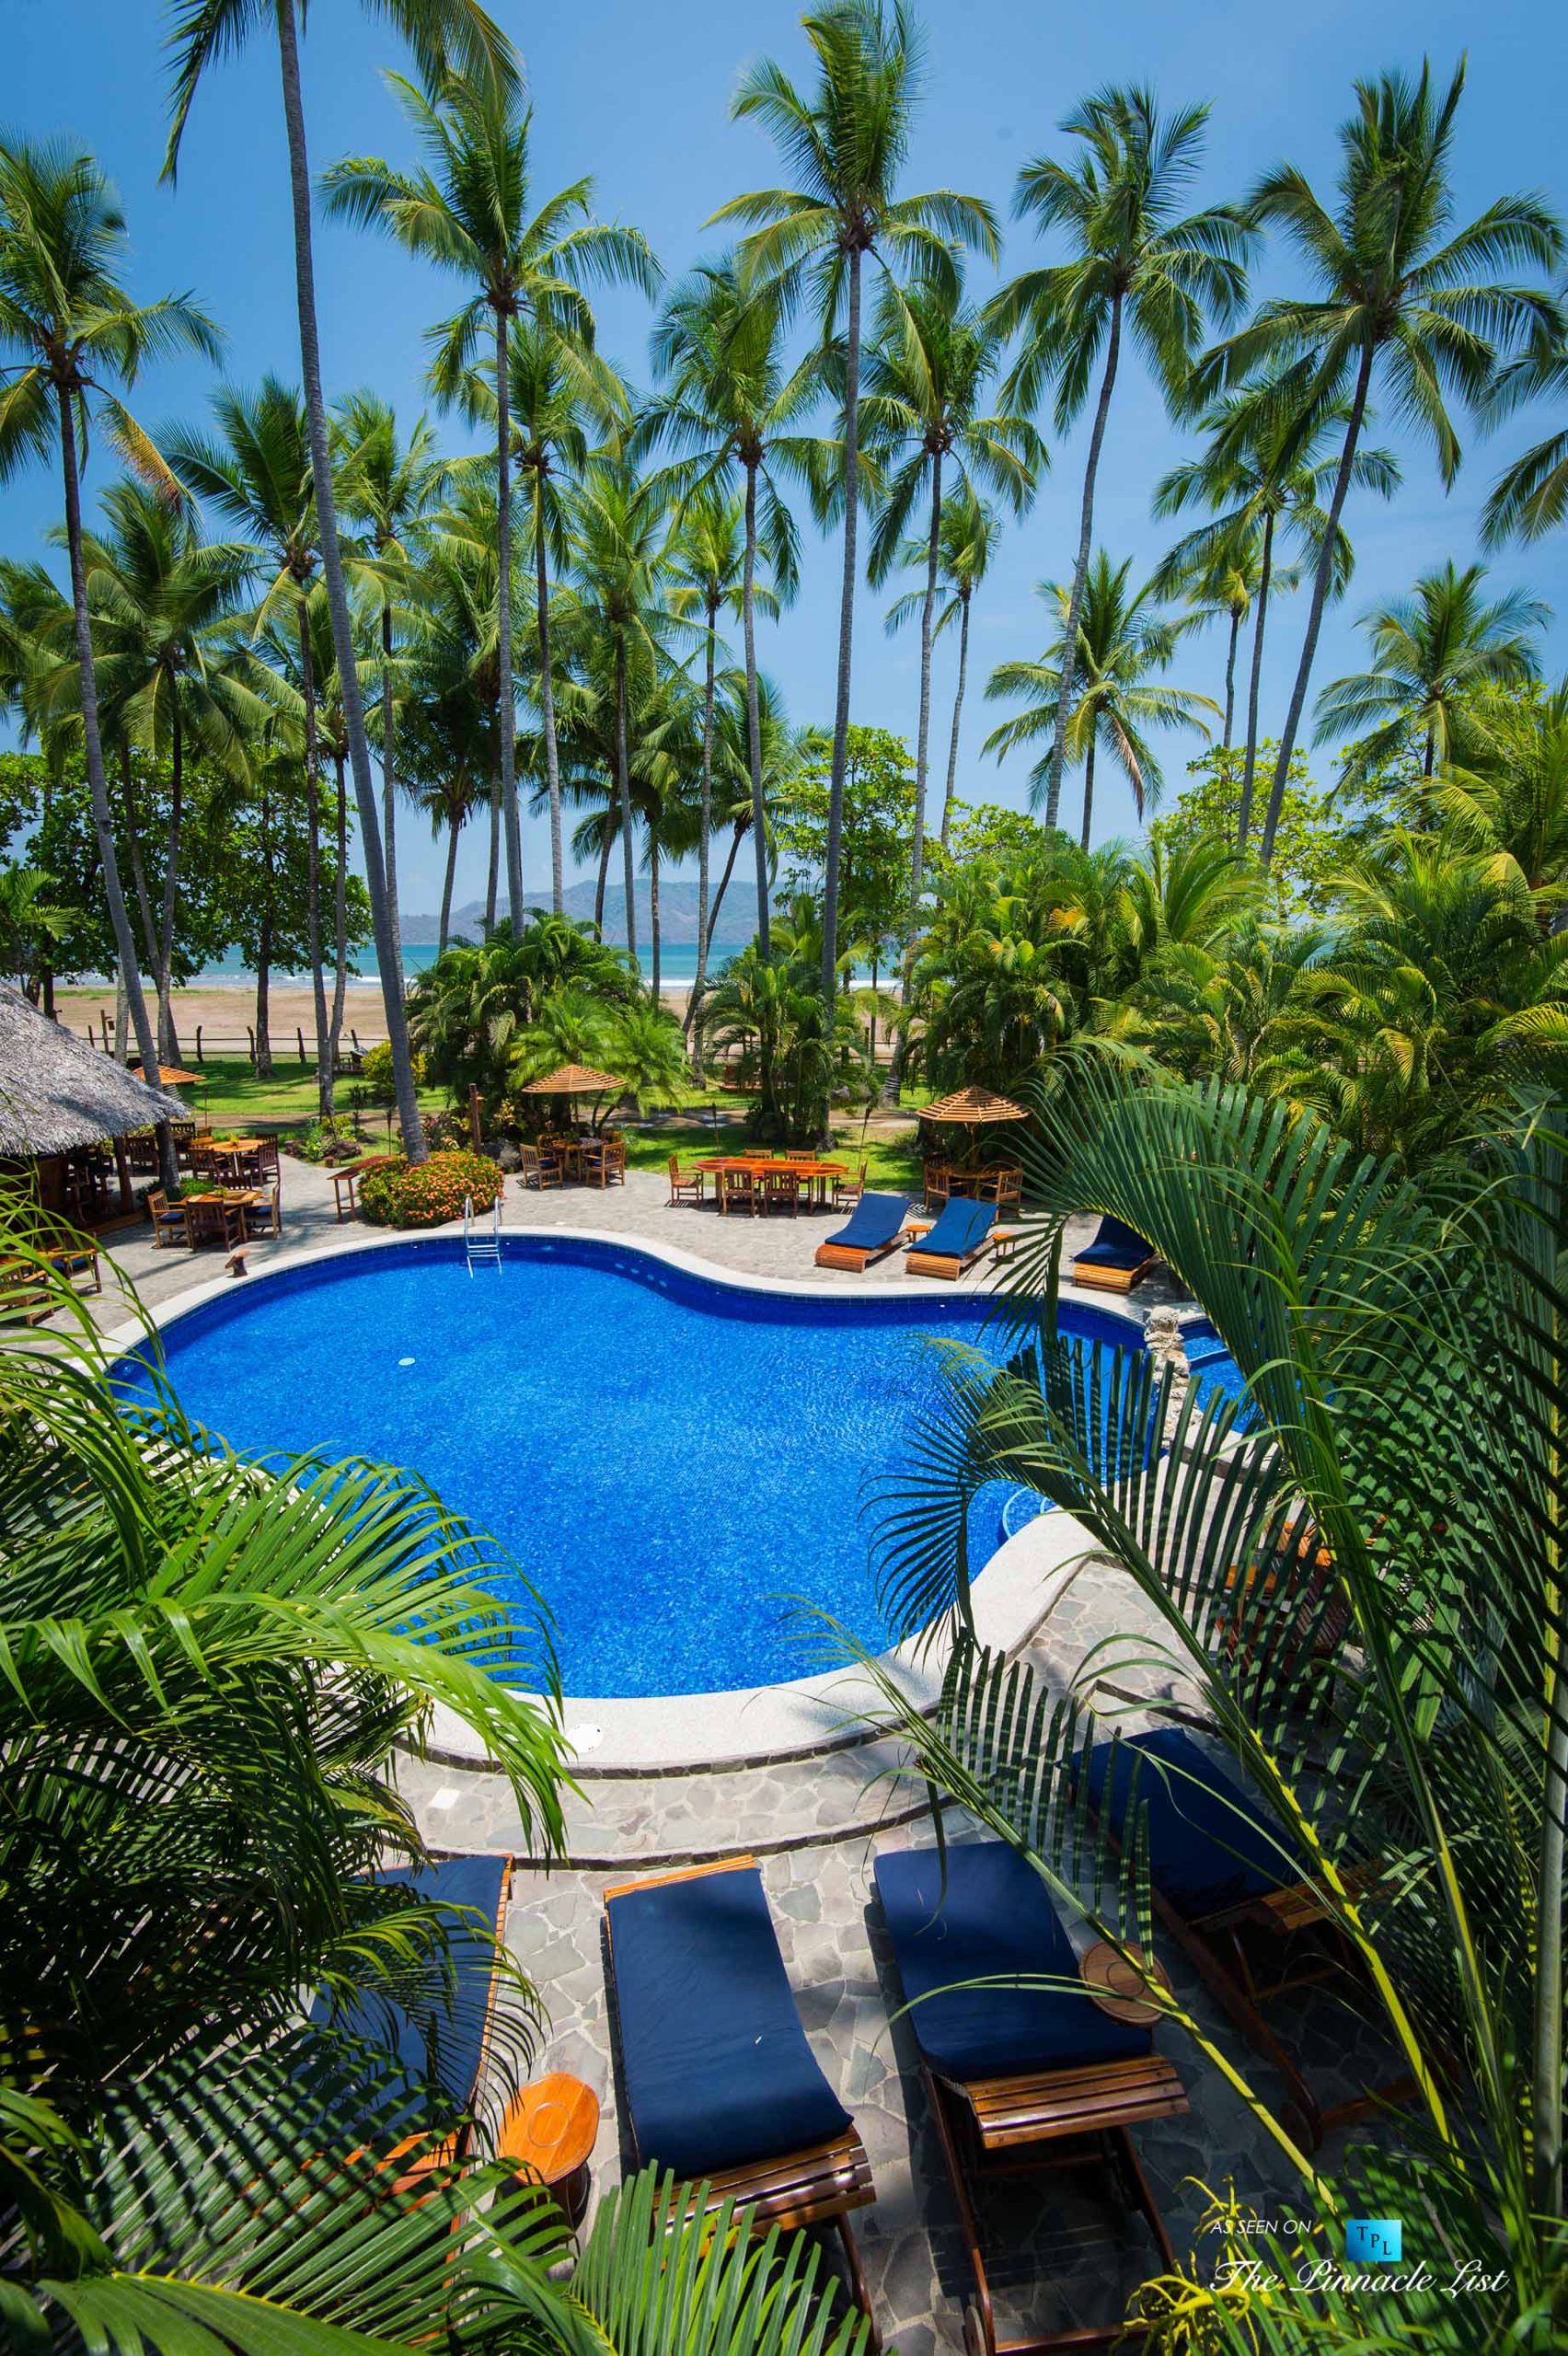 Tambor Tropical Beach Resort – Tambor, Puntarenas, Costa Rica – Tropical Pool